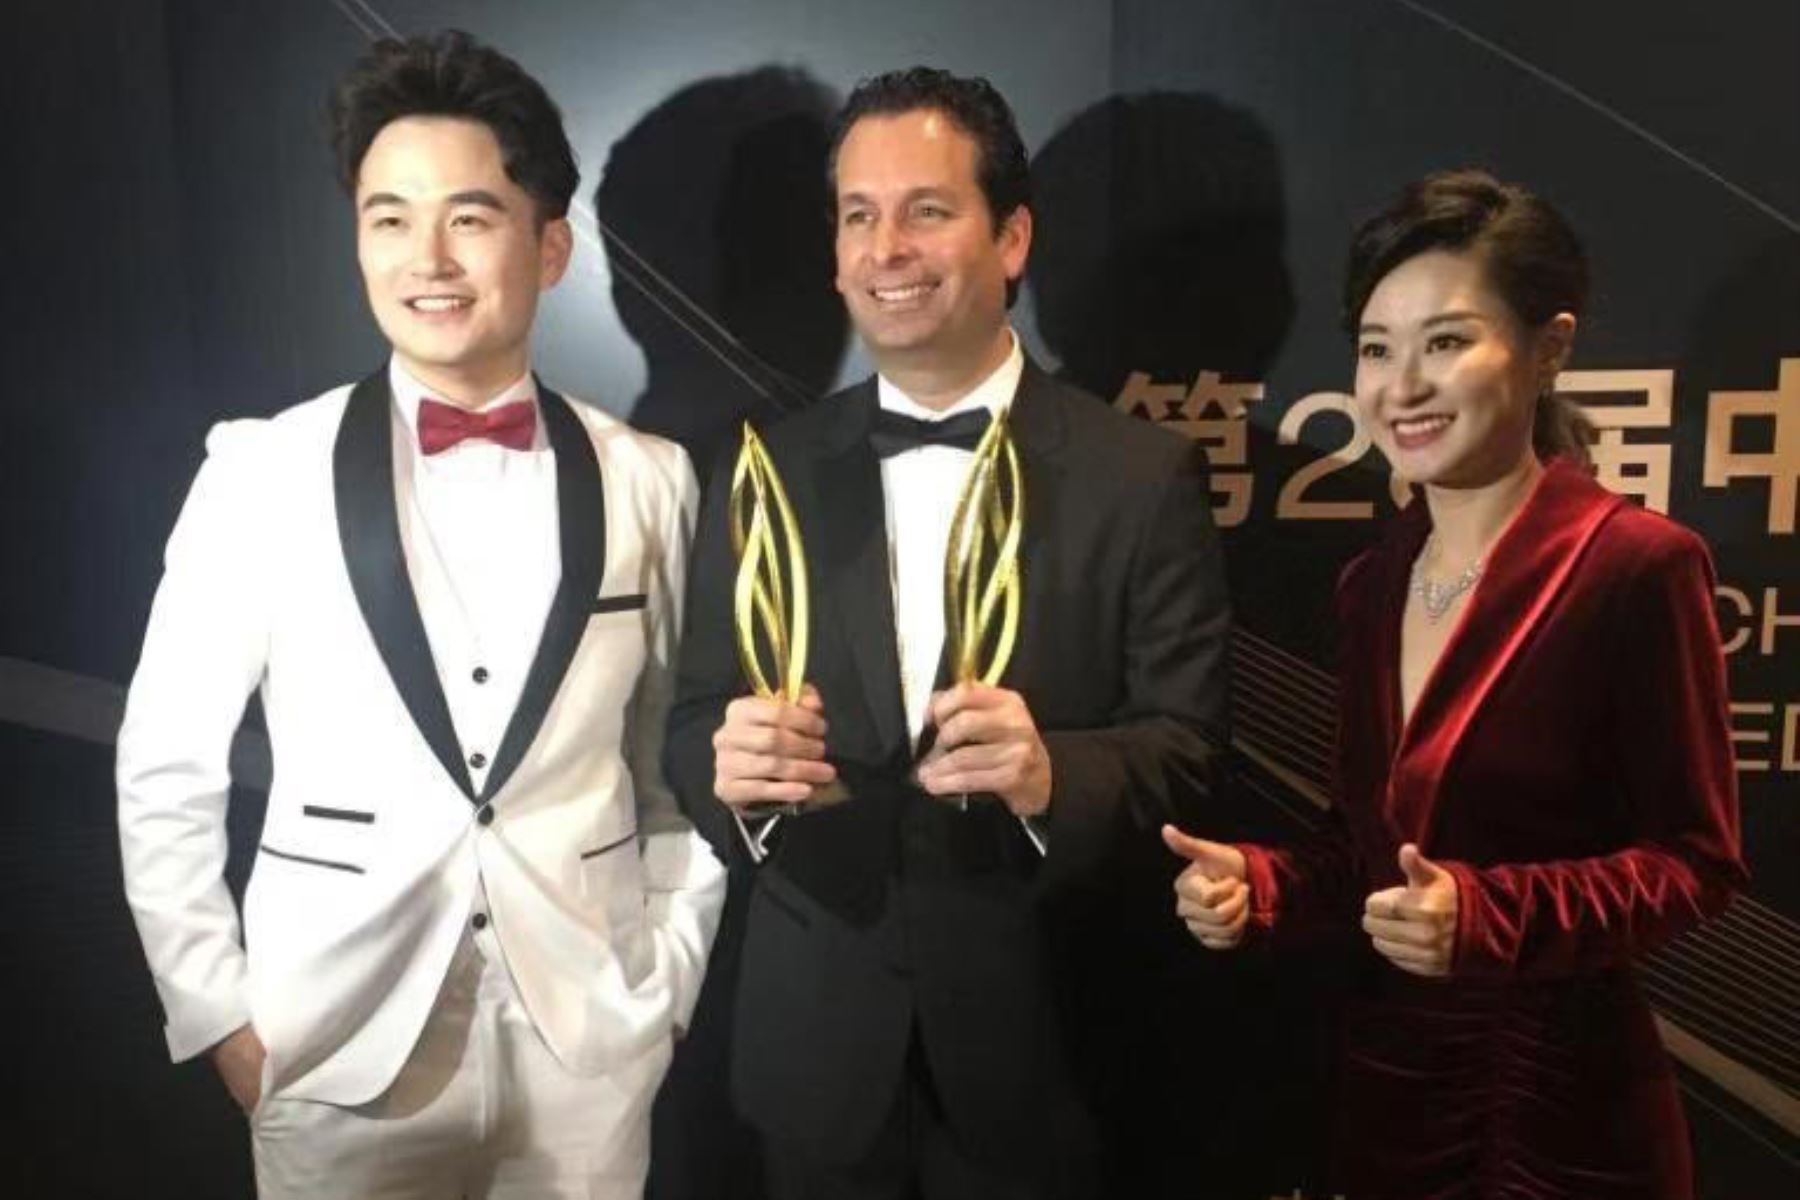 La película peruana Retablo ganó dos premios en el Certamen de cine más prestigioso de China, el Golden Rooster Awards